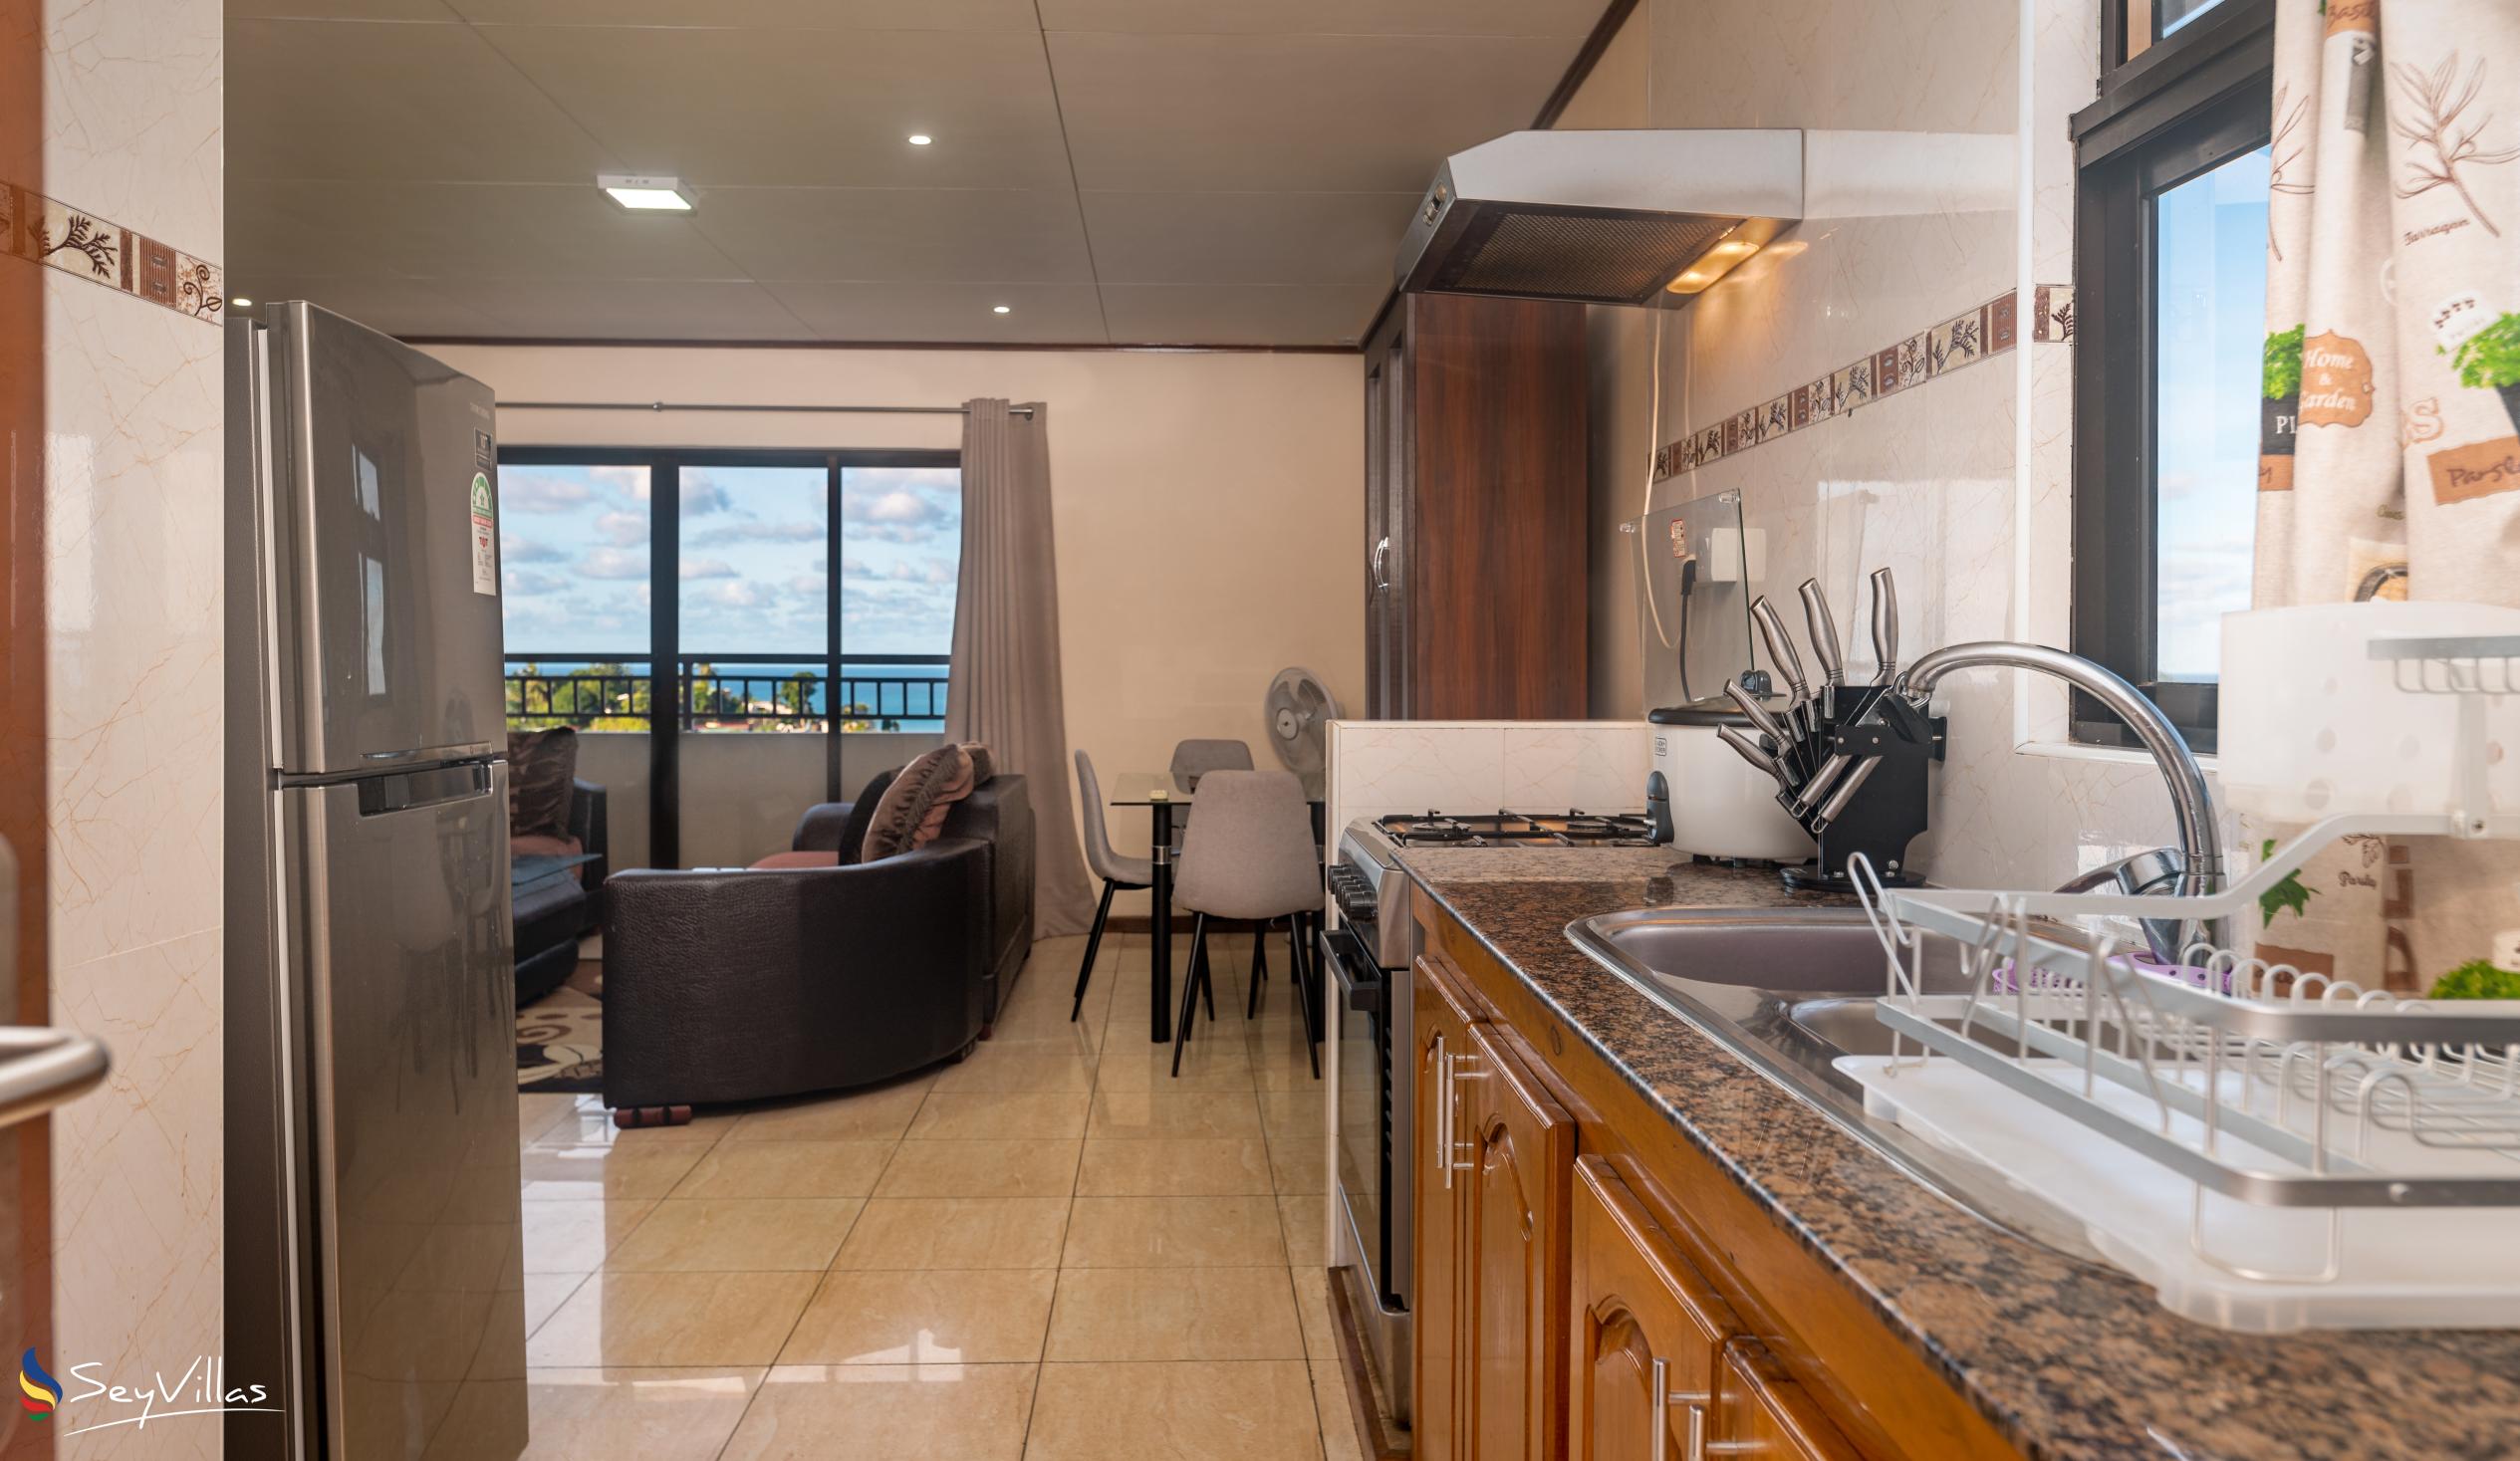 Foto 45: Maison L'Horizon - Appartamento con 2 camere Soley - Mahé (Seychelles)